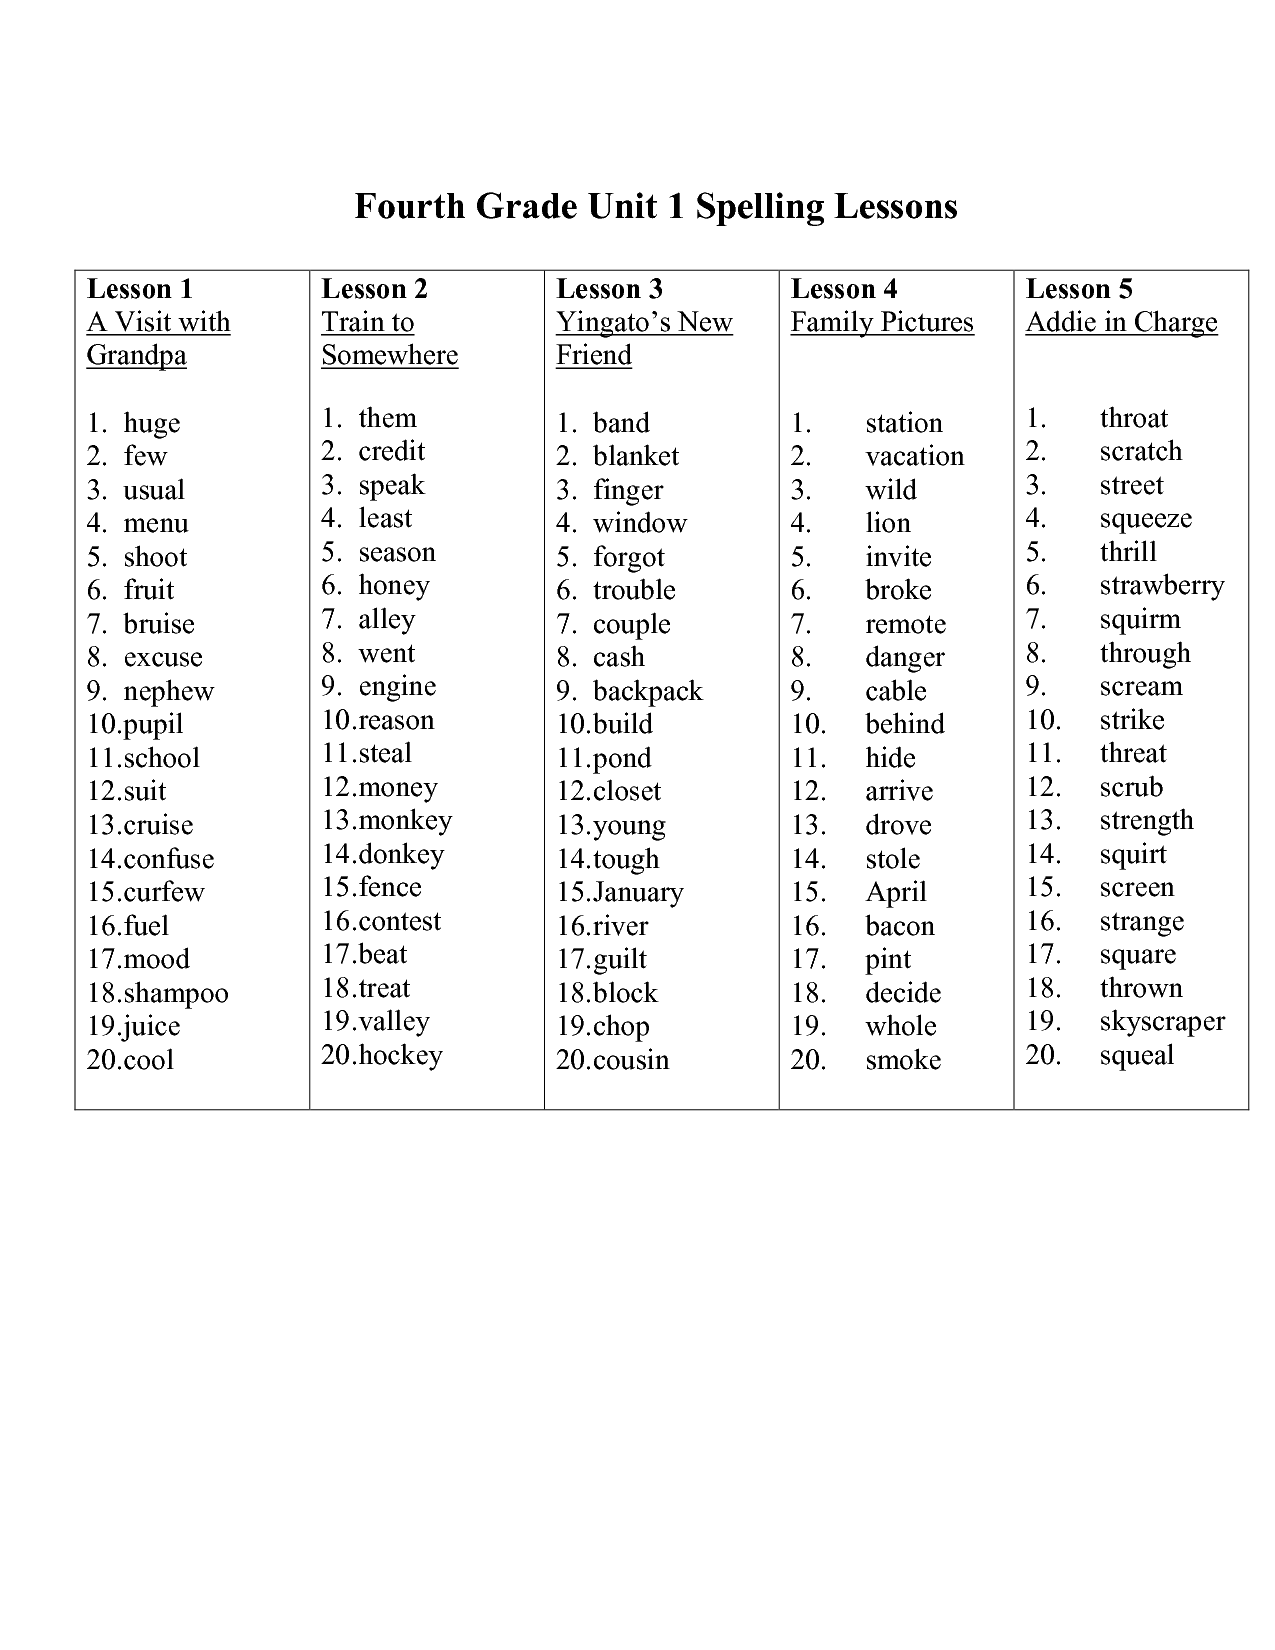 10-best-images-of-4th-grade-spelling-worksheets-printable-3rd-grade-spelling-bee-word-list